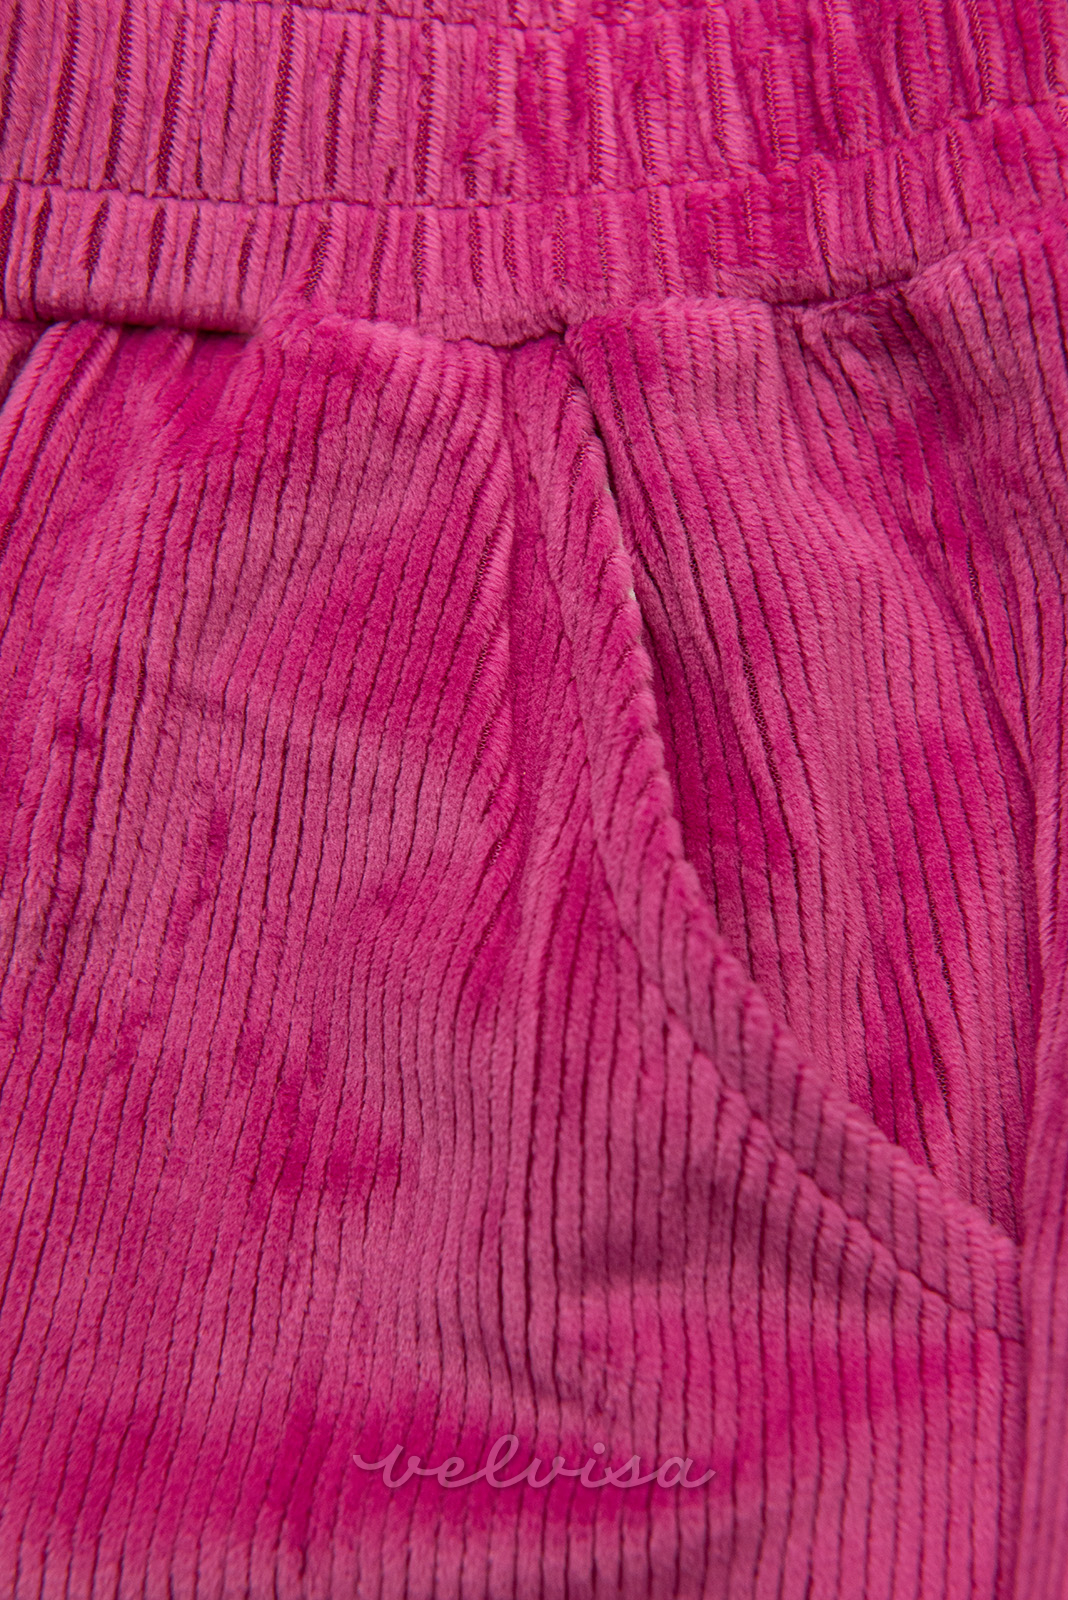 Pantaloni rosa con allacciatura in vita